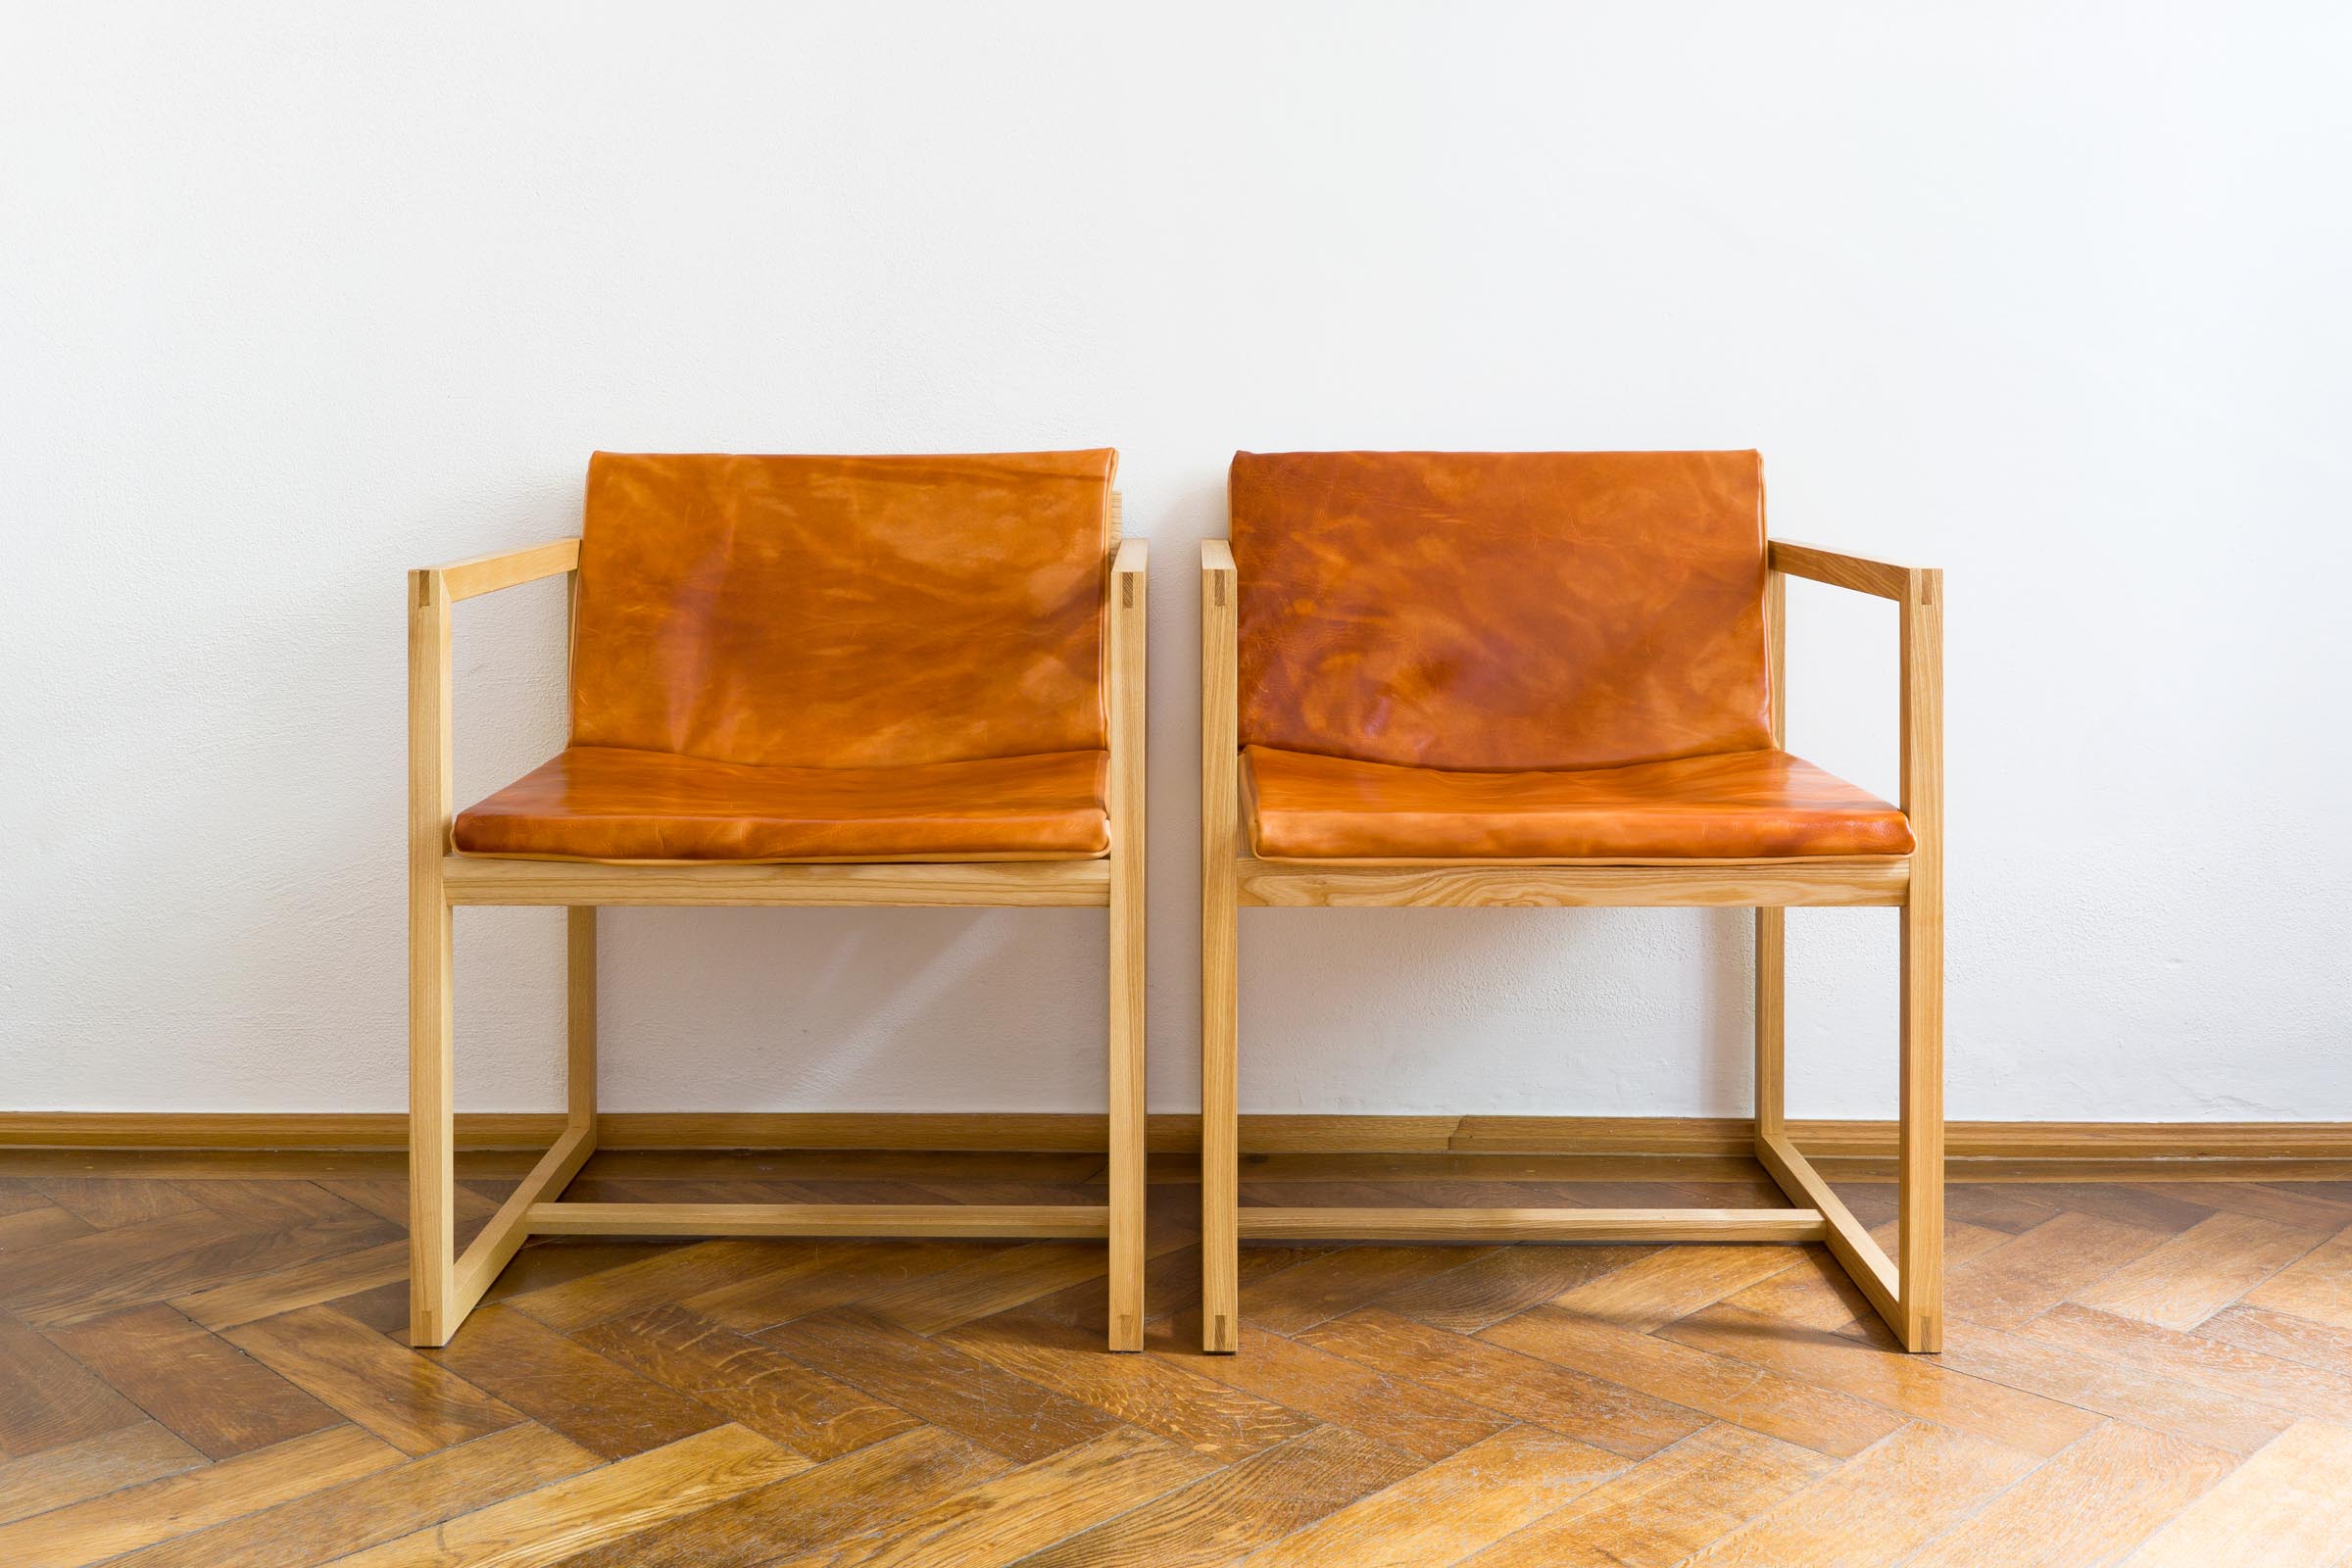 Stühle mit Lederauflage aus Massivholz Esche handgefertigt als Einzelmöbelstück von The Trees of Life in Perg in Oberösterreich